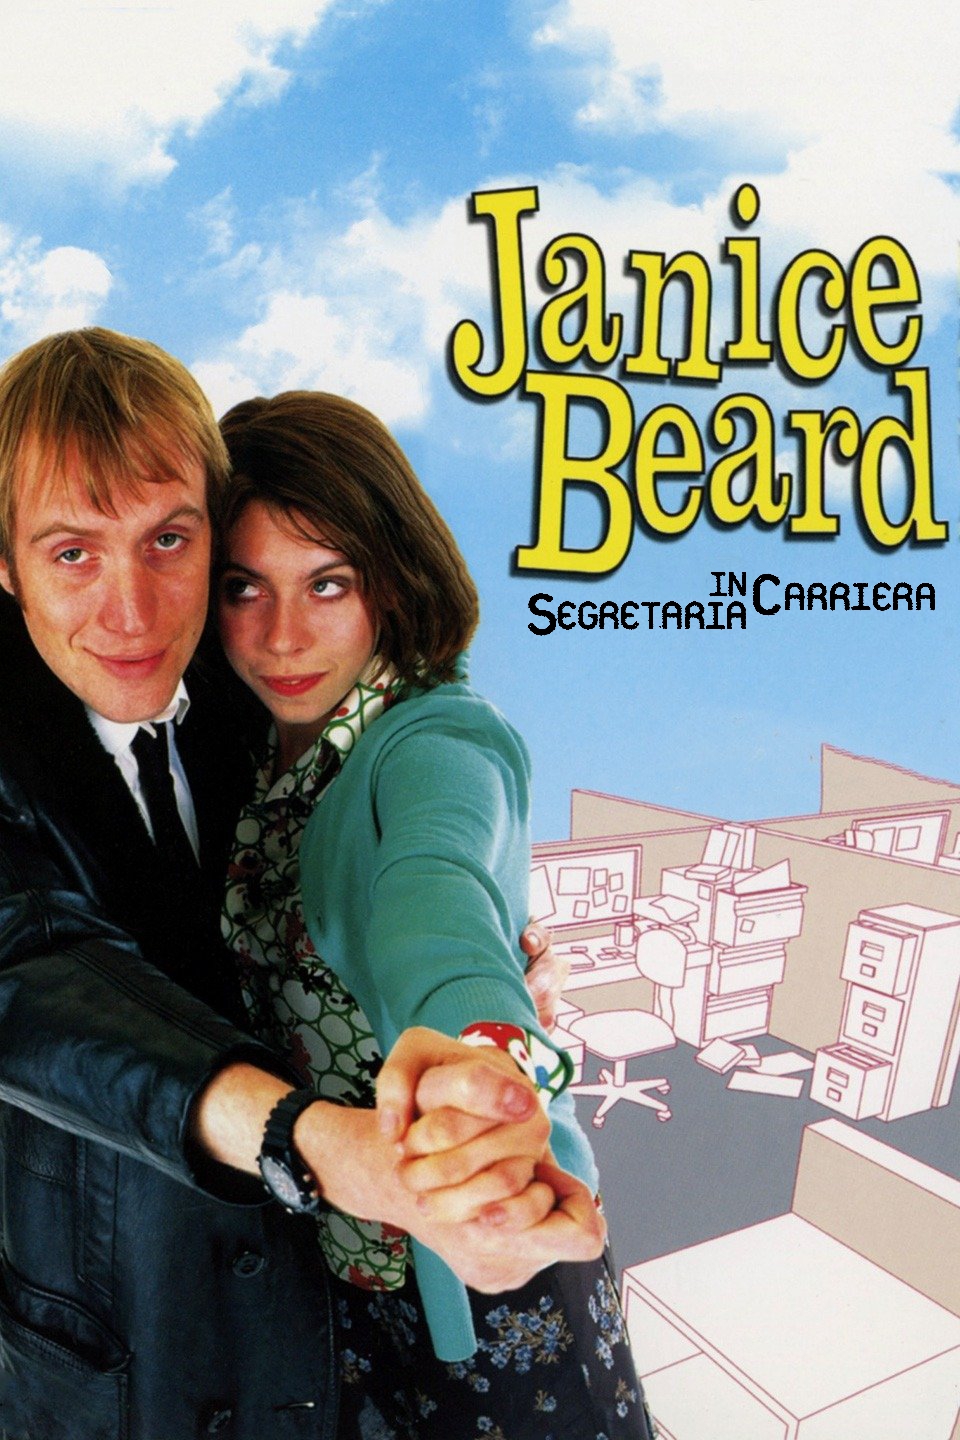 Janice Beard – Segretaria in carriera (1999)